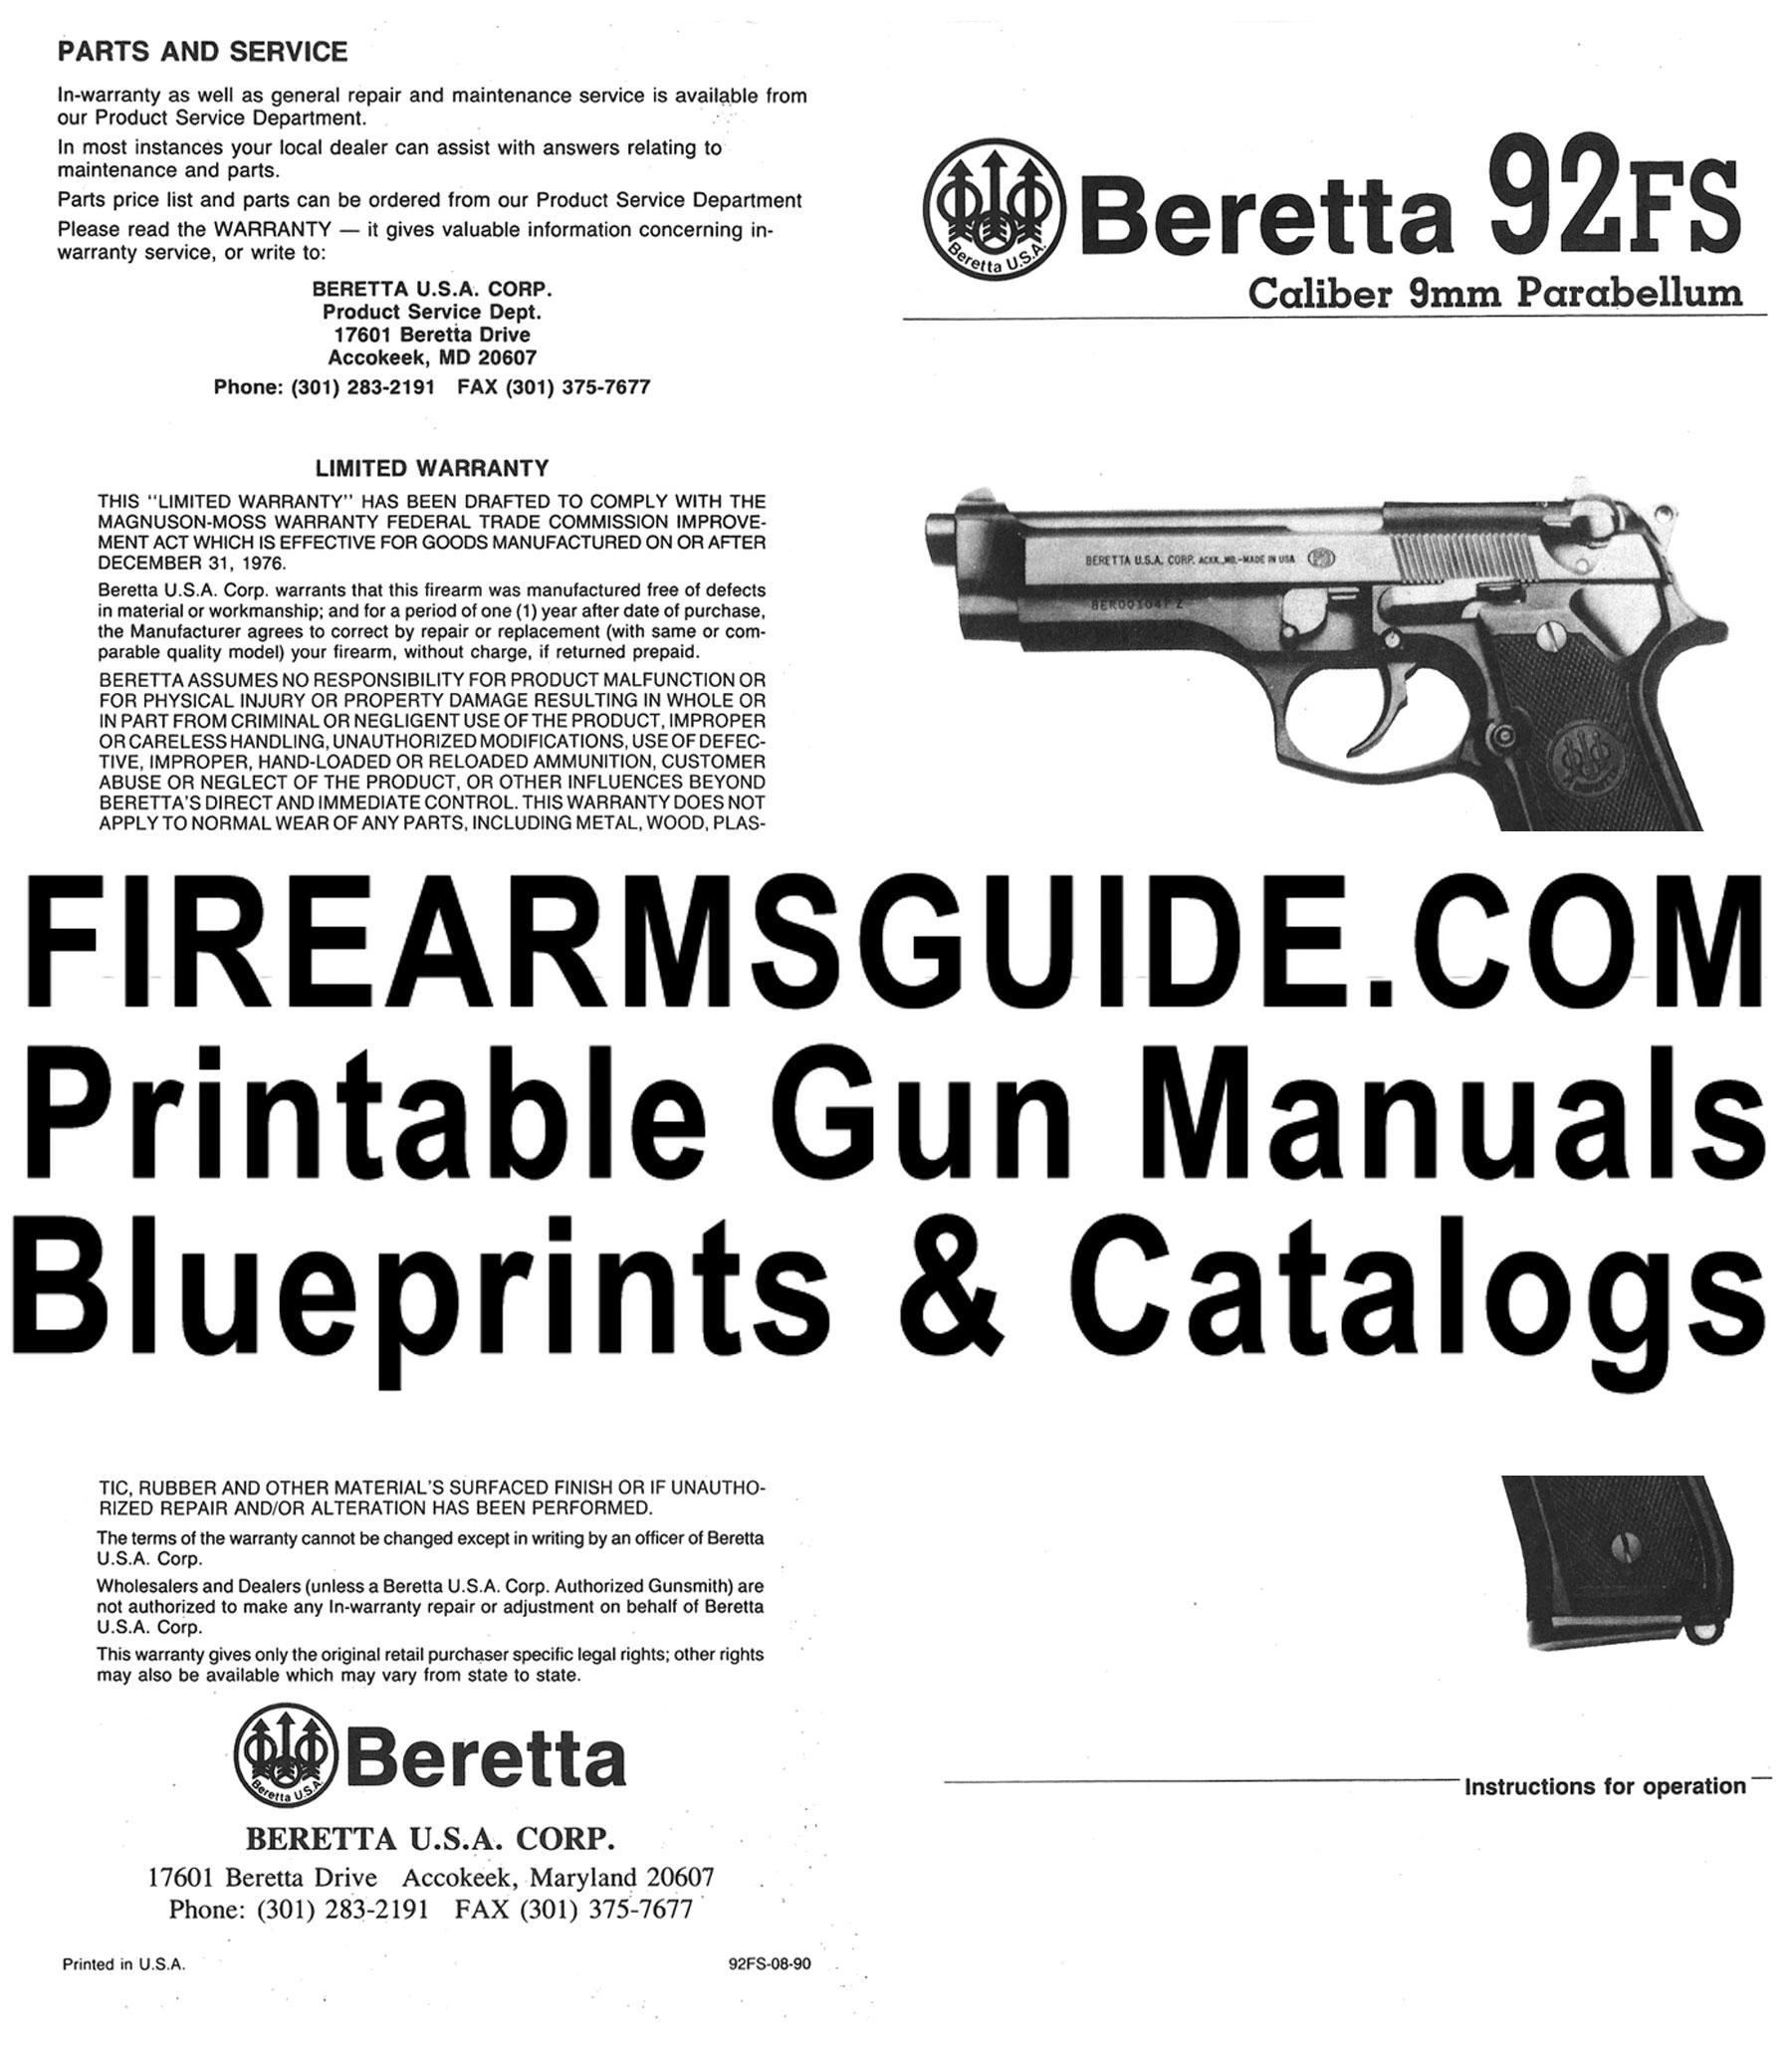 Firearms Guide (@FirearmsGuide) / Twitter